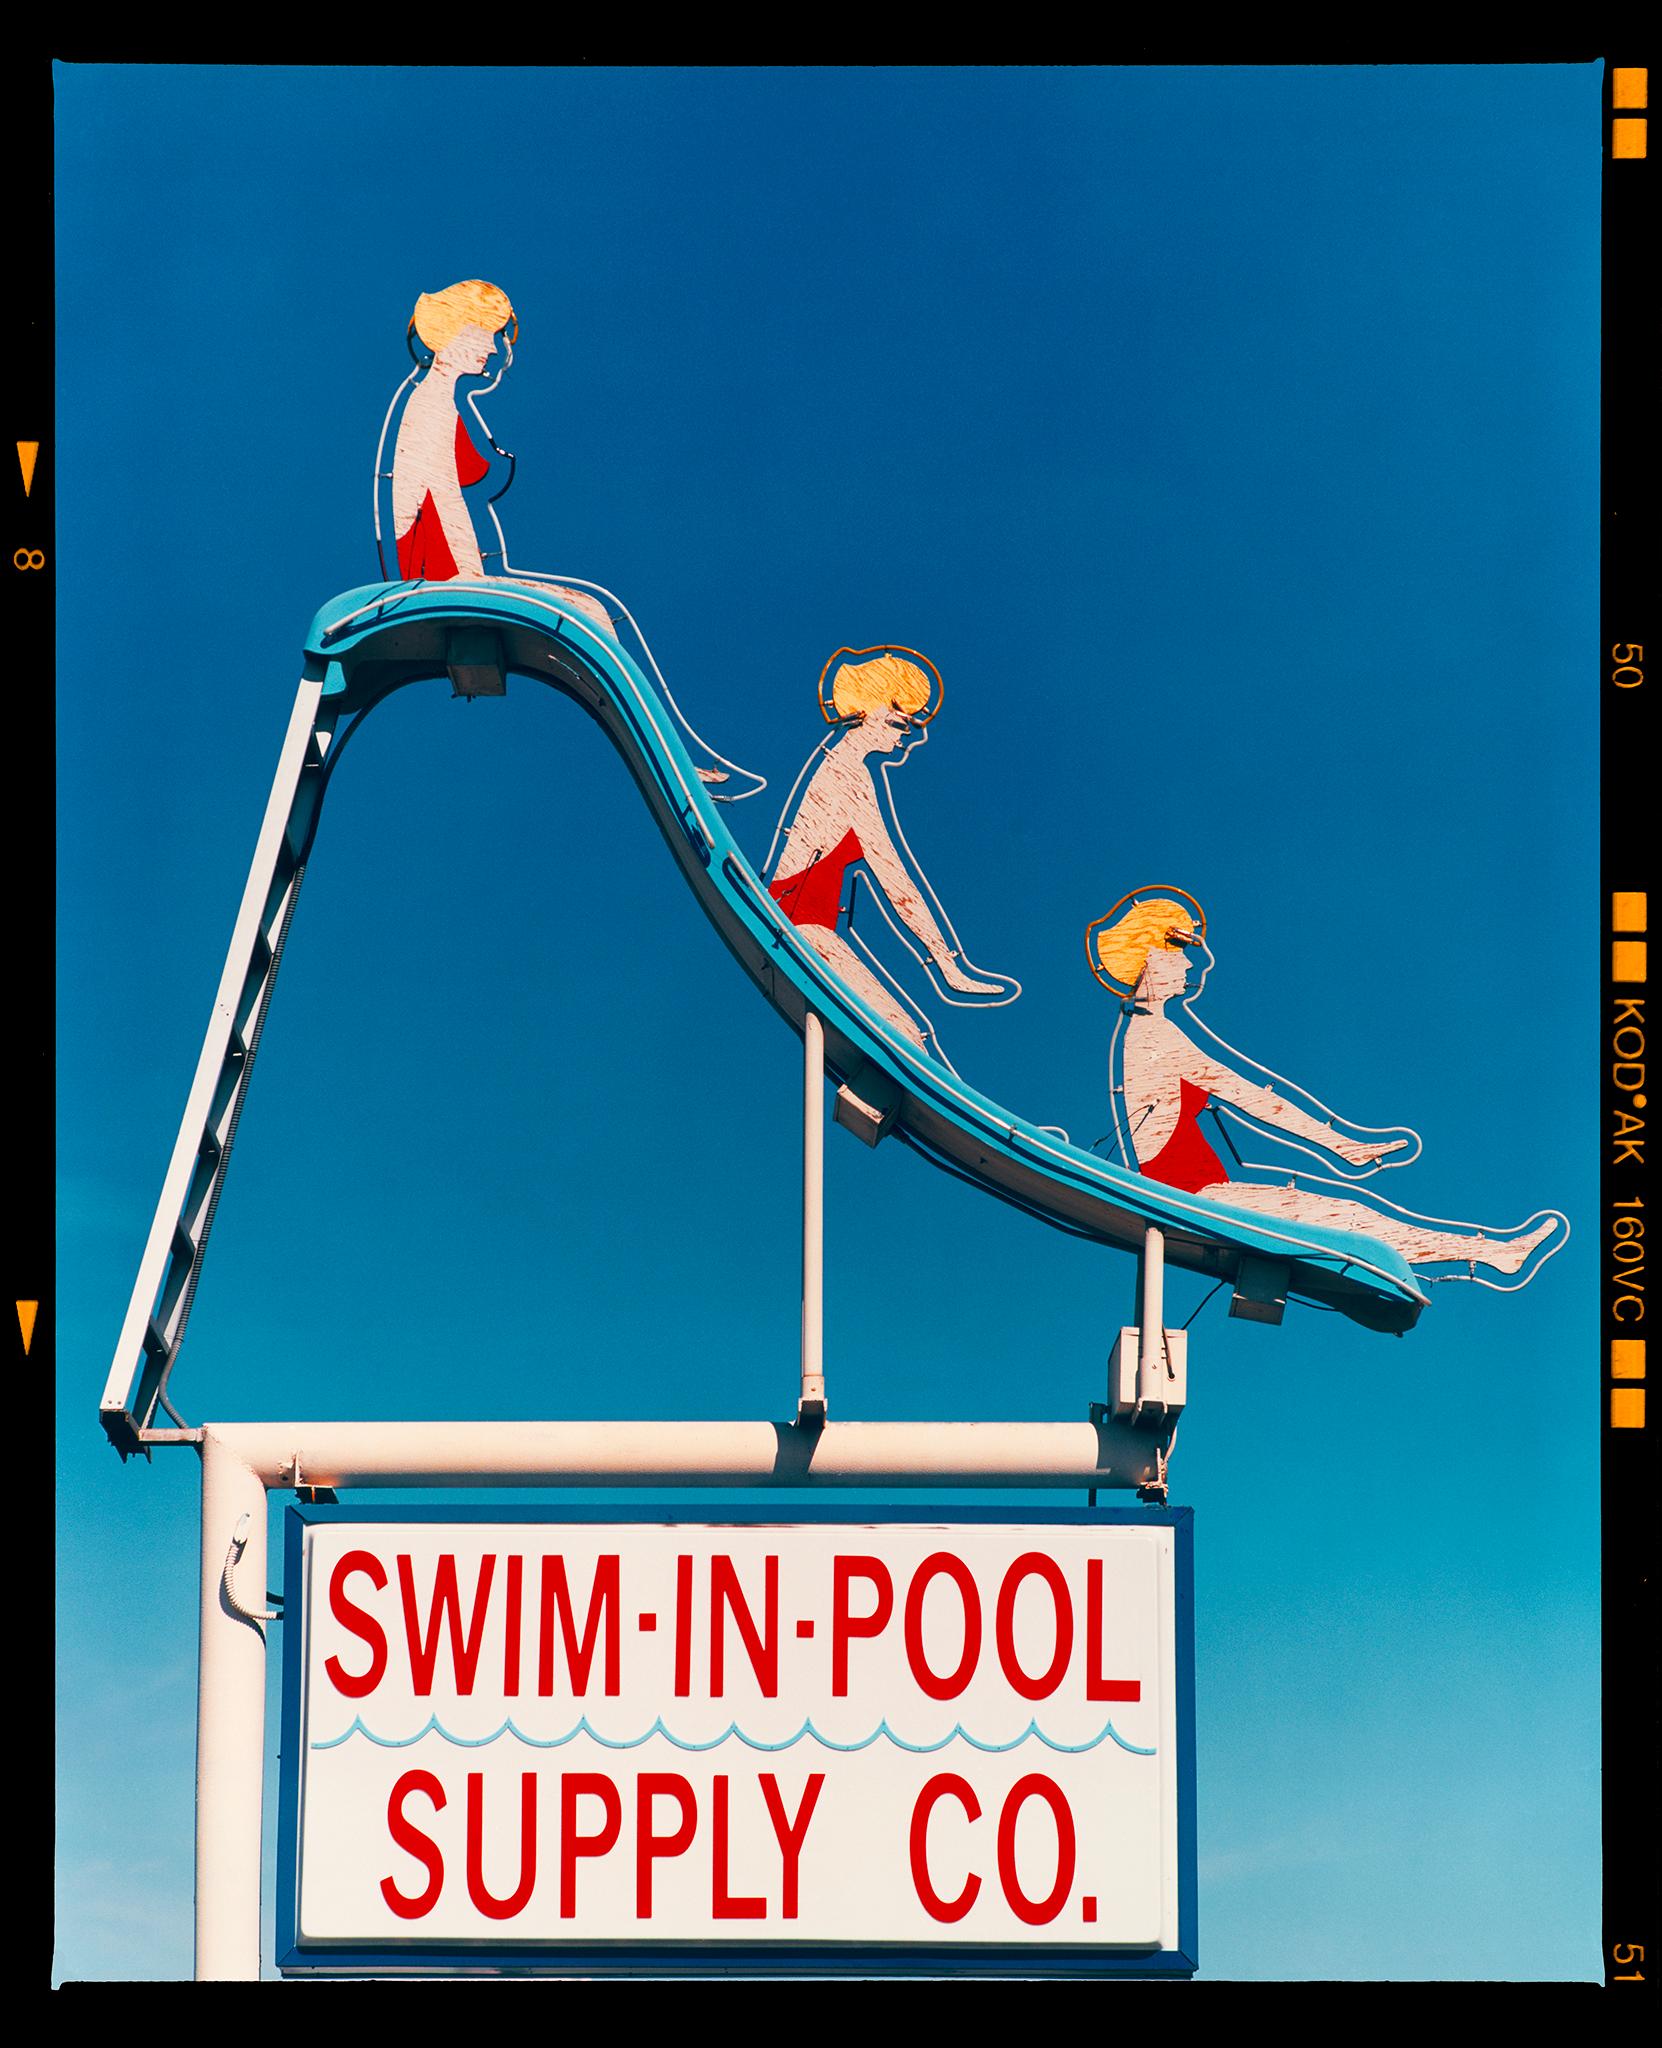 Color Photograph Richard Heeps - Swim-in-Pool Supply Co. Las Vegas - Photographie de panneau coloré américain 